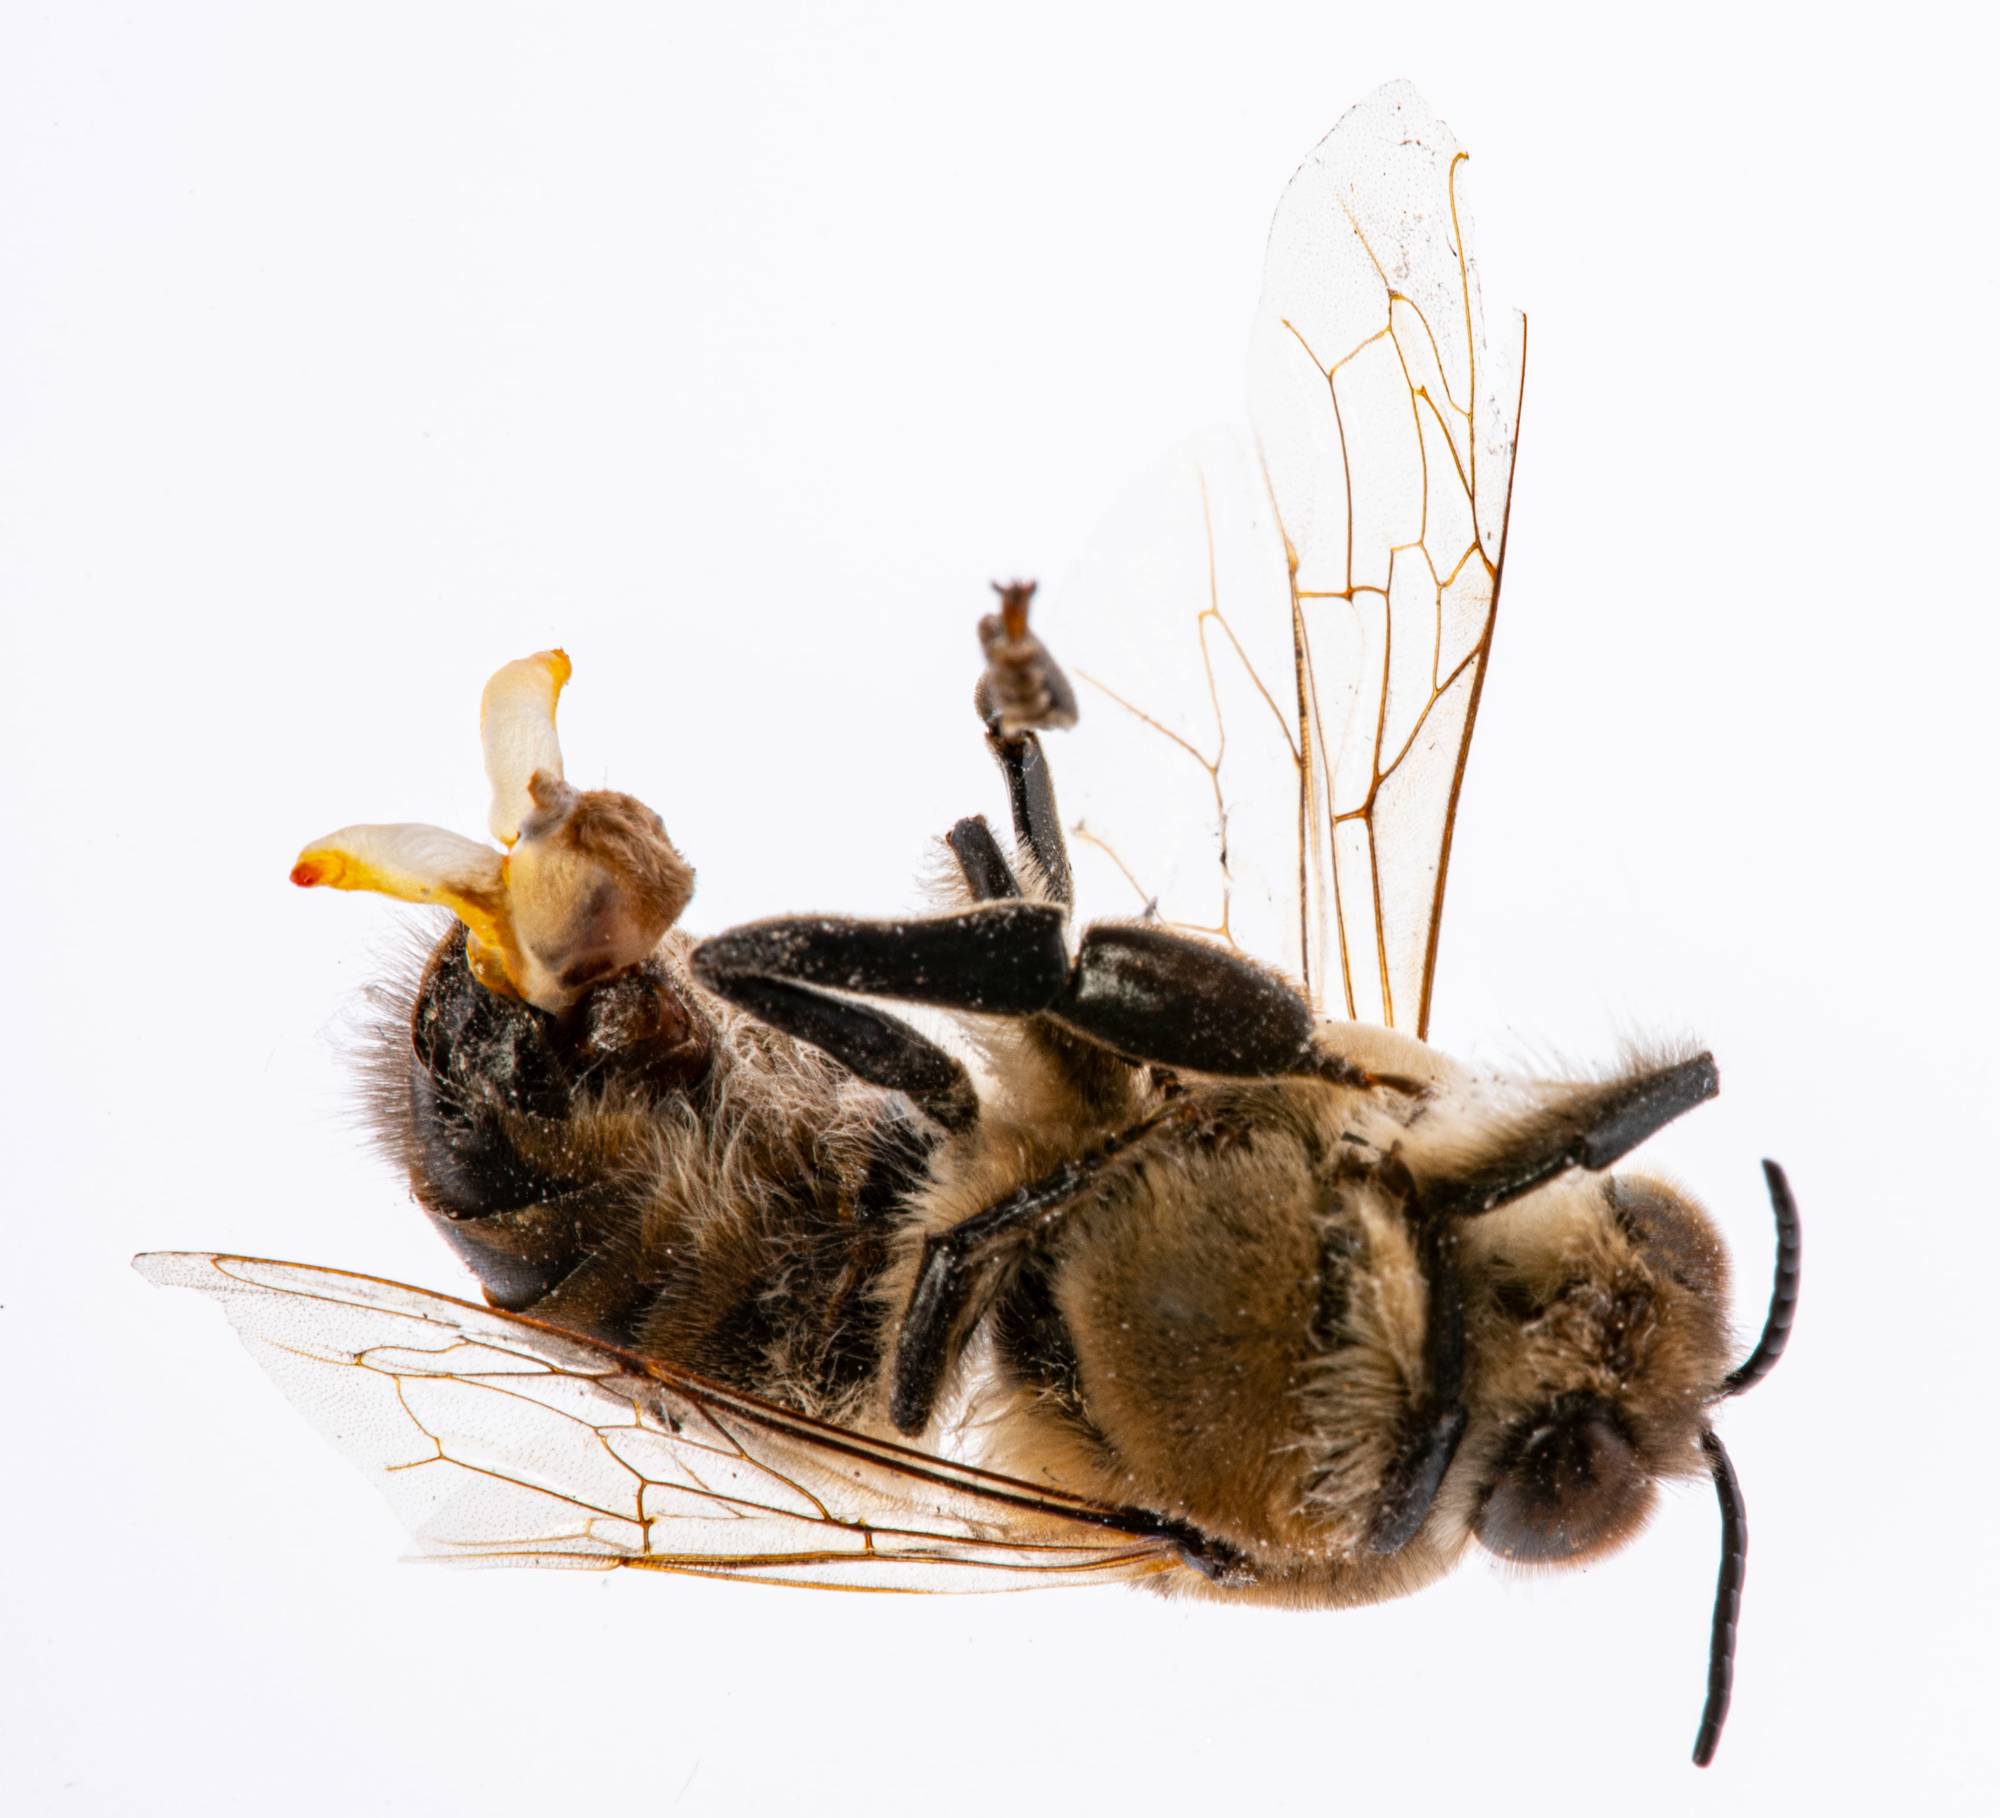 zángano de abeja